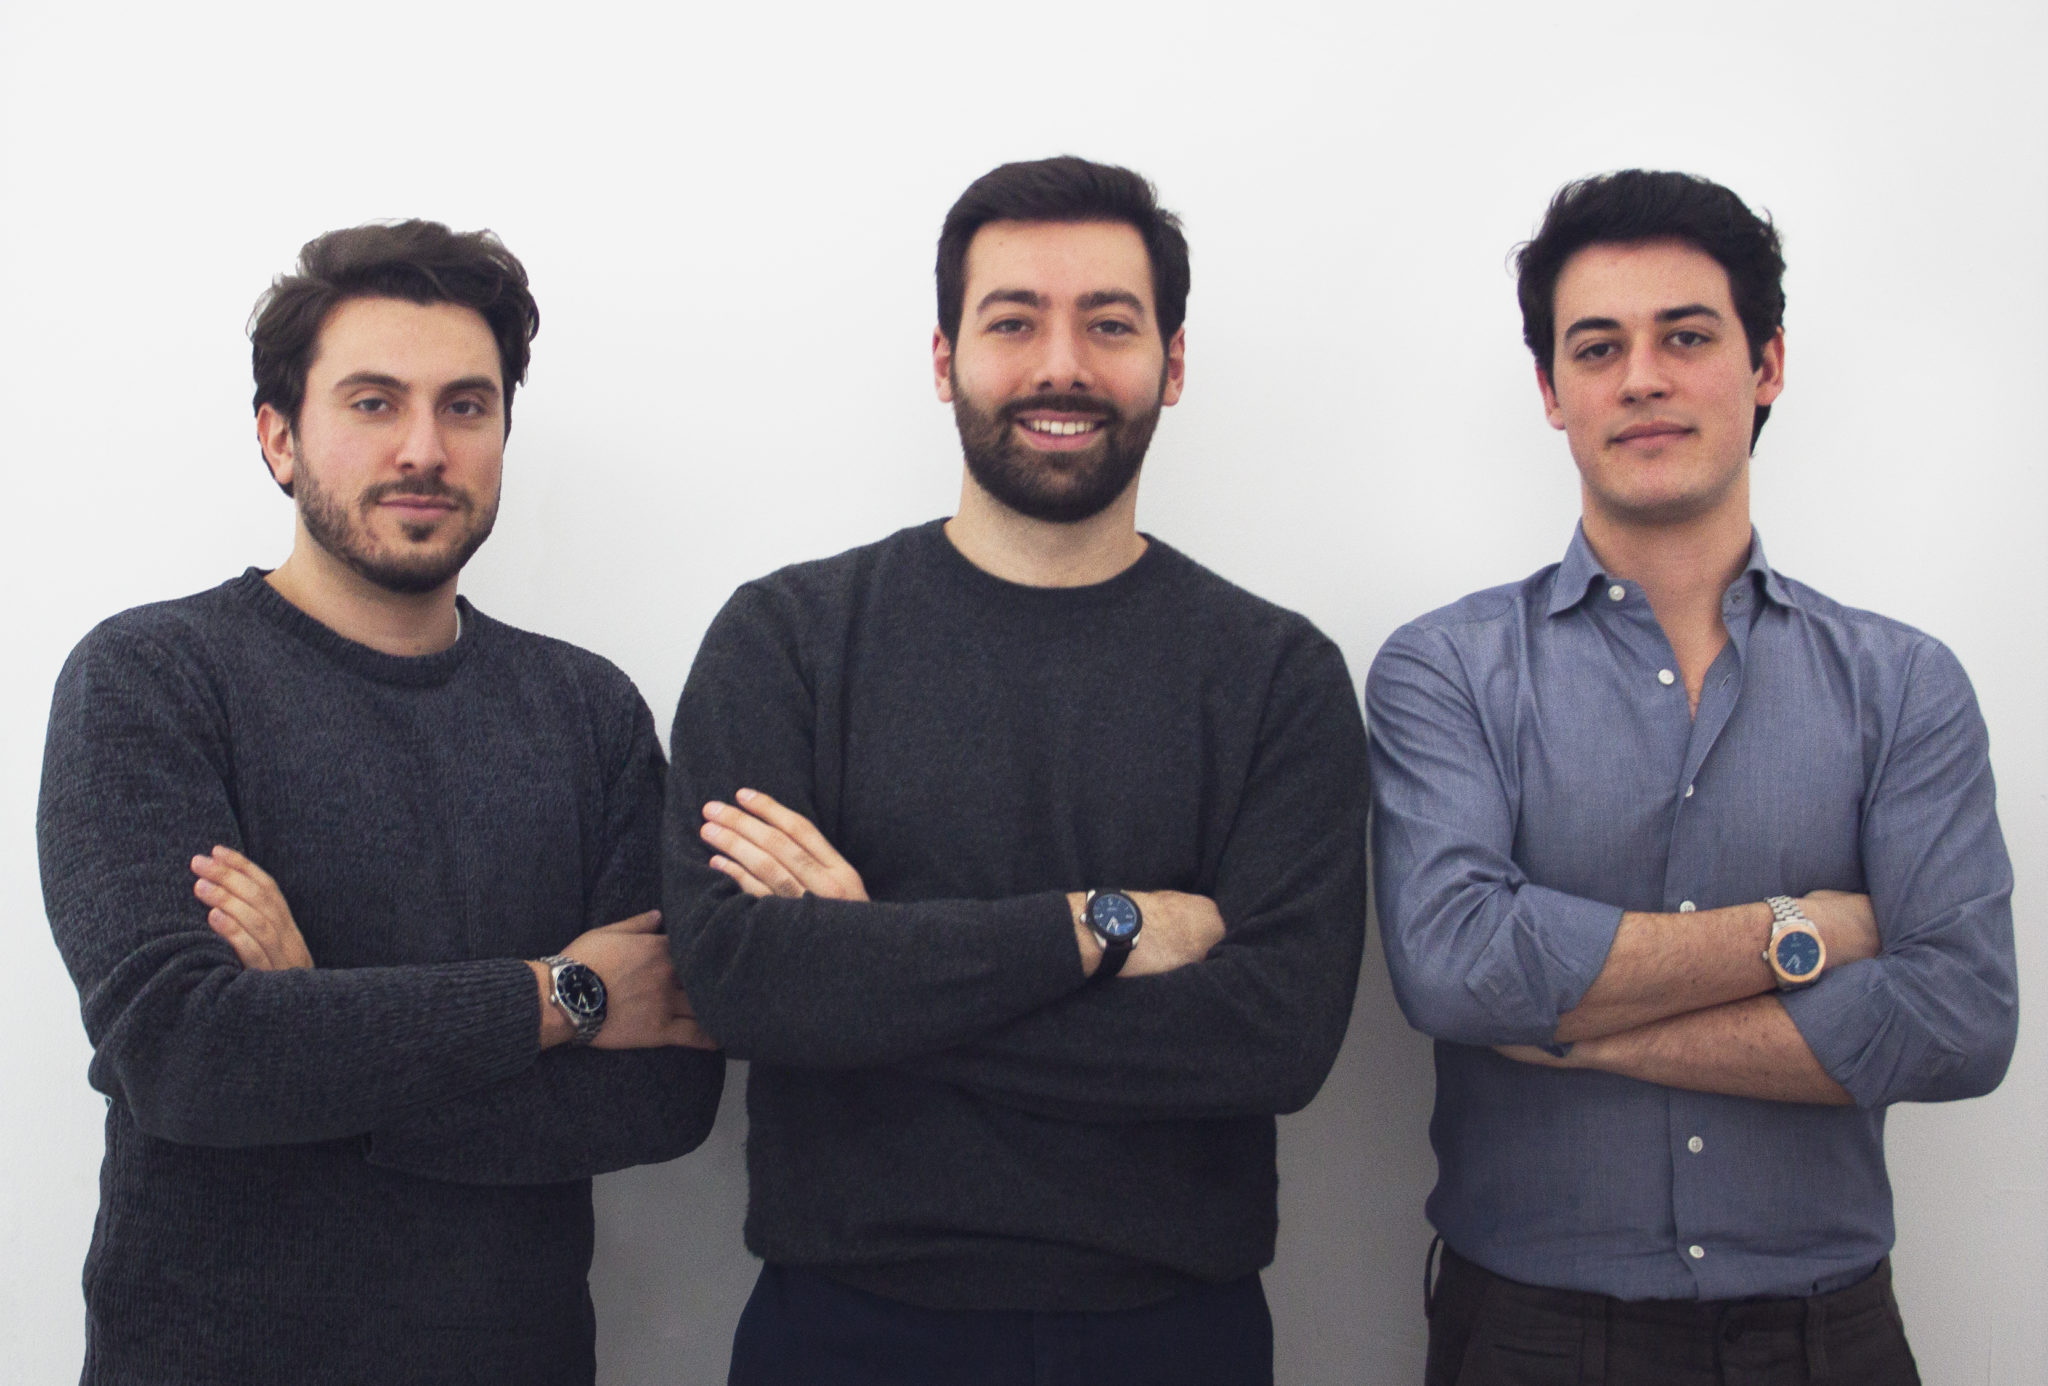 Alessandro Pedersoli Ceo & Chief Designer, Matteo Capetti Business Strategist and Sales Director, Pietro Punzo Designer & E-Commerce Manager